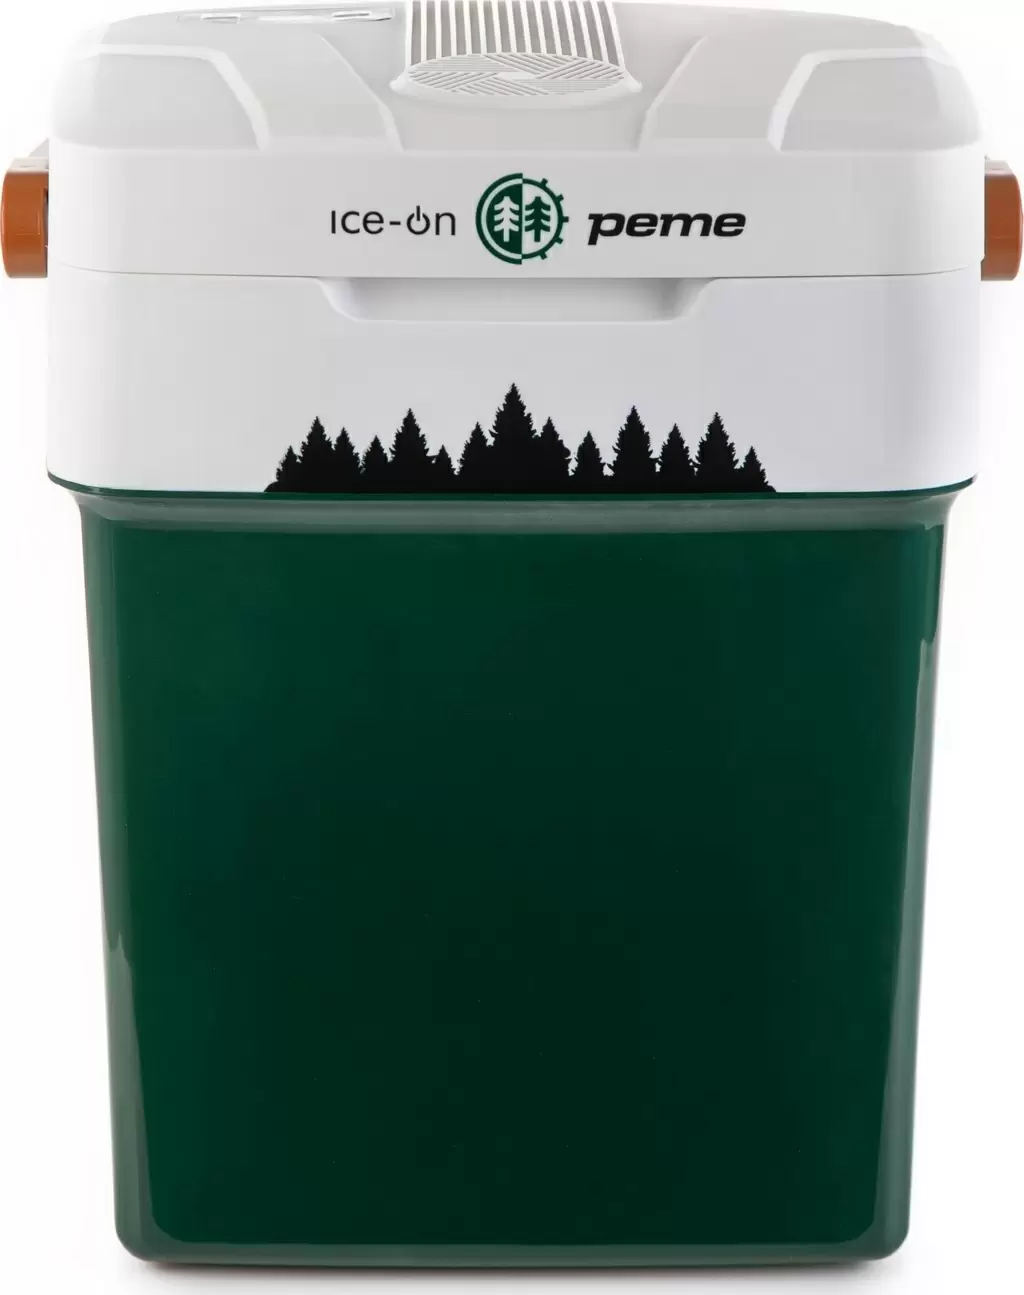 Frigider auto Peme Ice-on 32L, verde